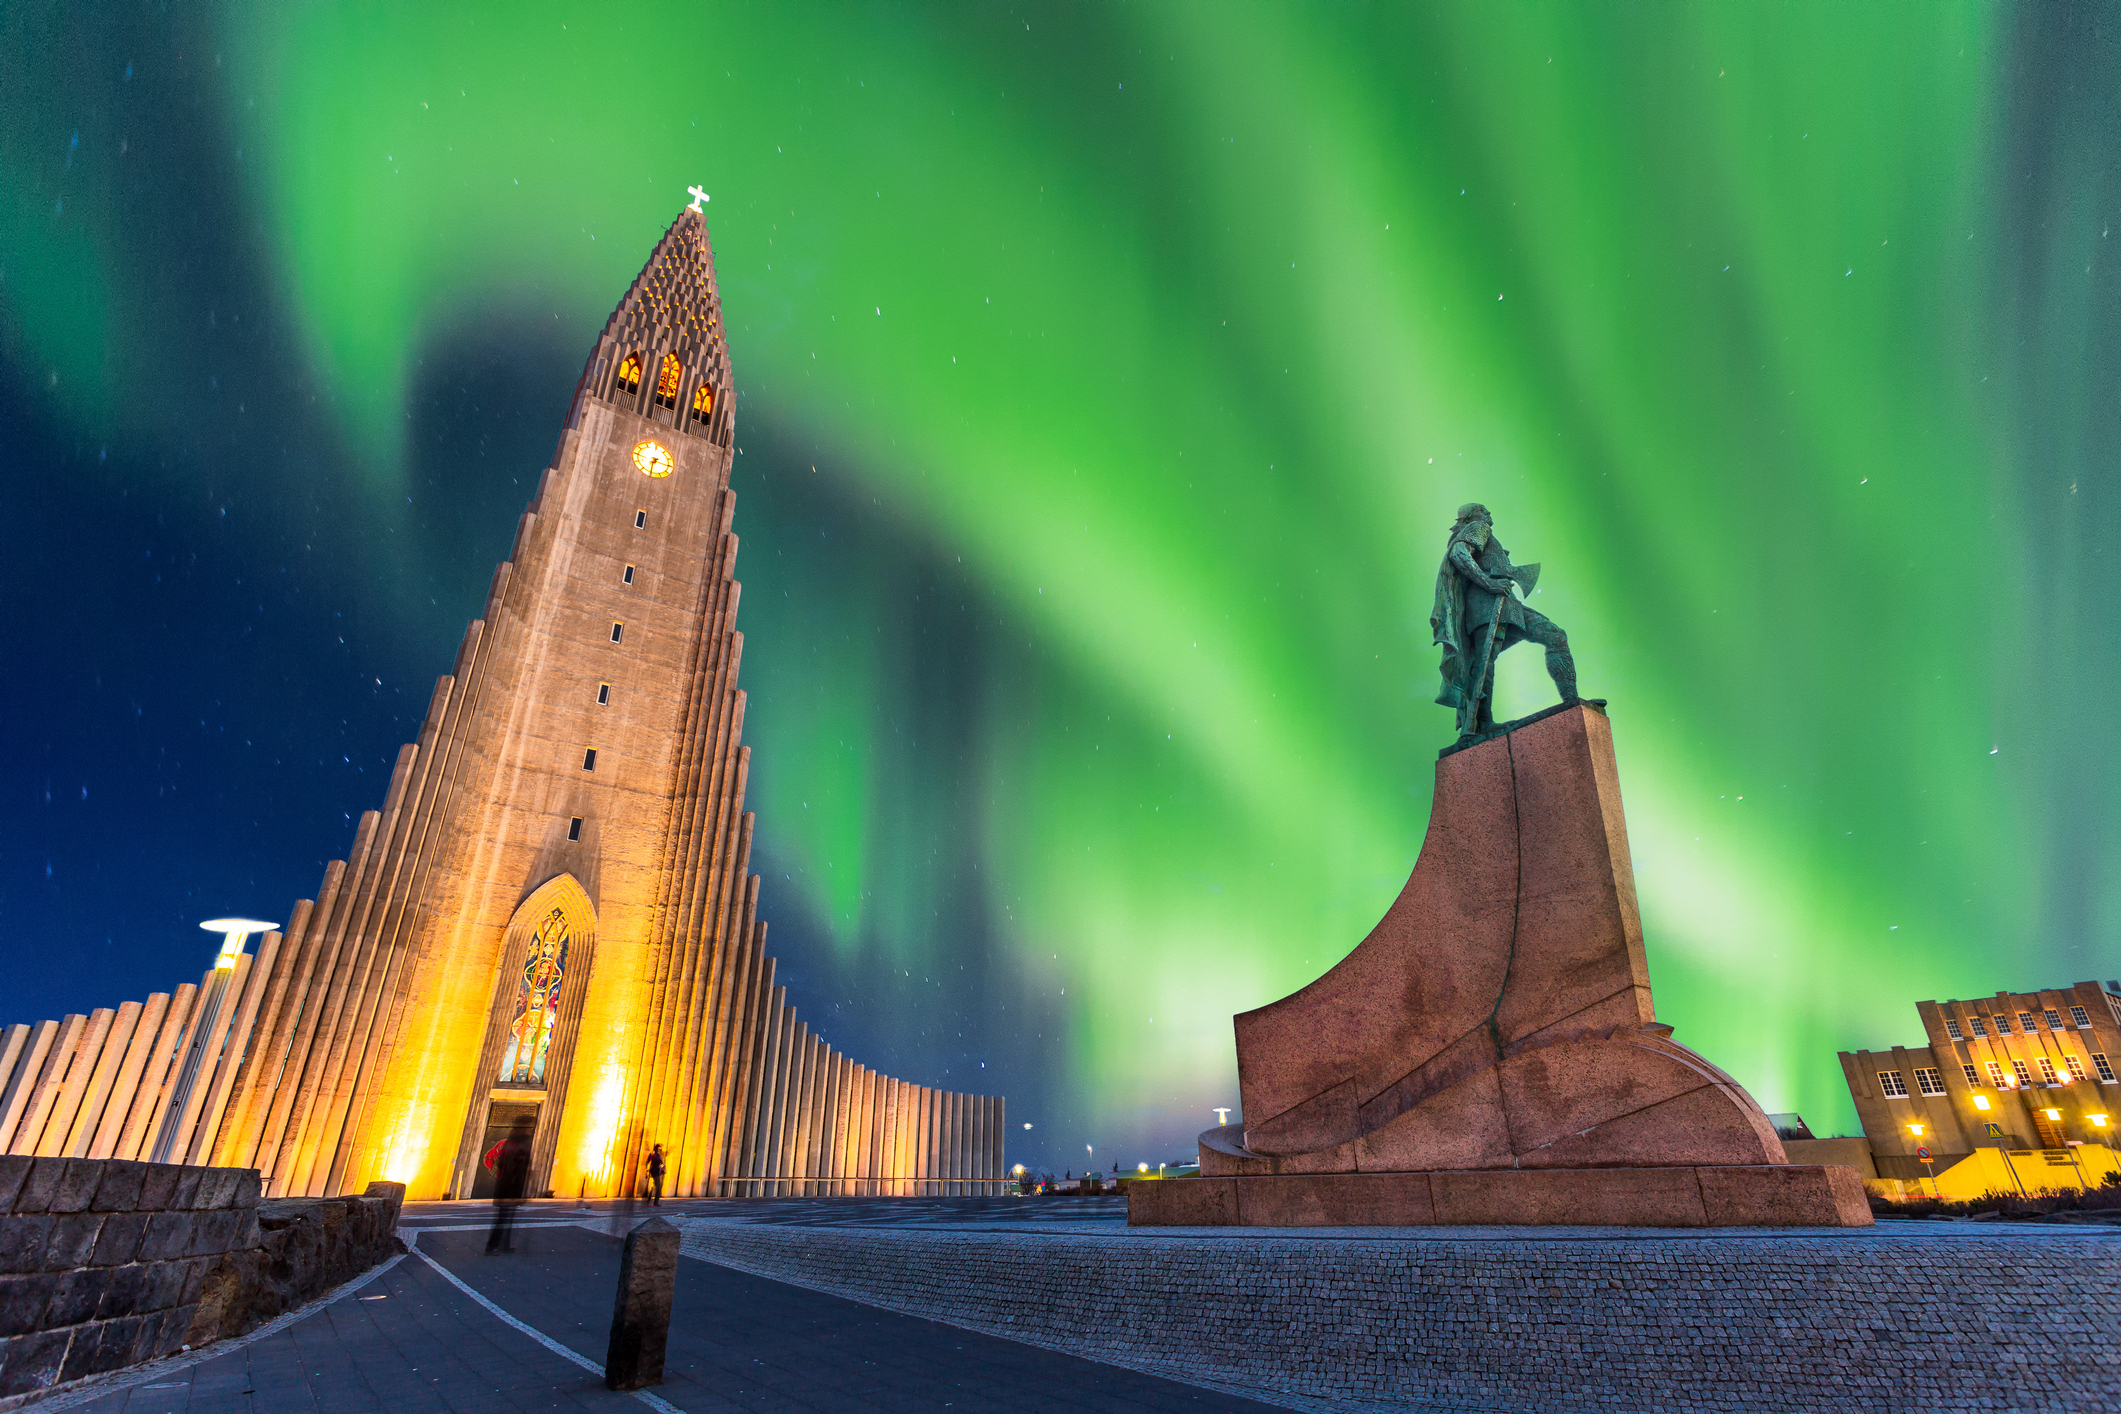 seuceuestrelado - Aurora boreal em formato de fênix sobe o céu da Islândia  😮🔭🌌 As auroras boreais do norte são efeitos celestiais que, por si só,  são um espetáculo naturalmente lindo. ✨